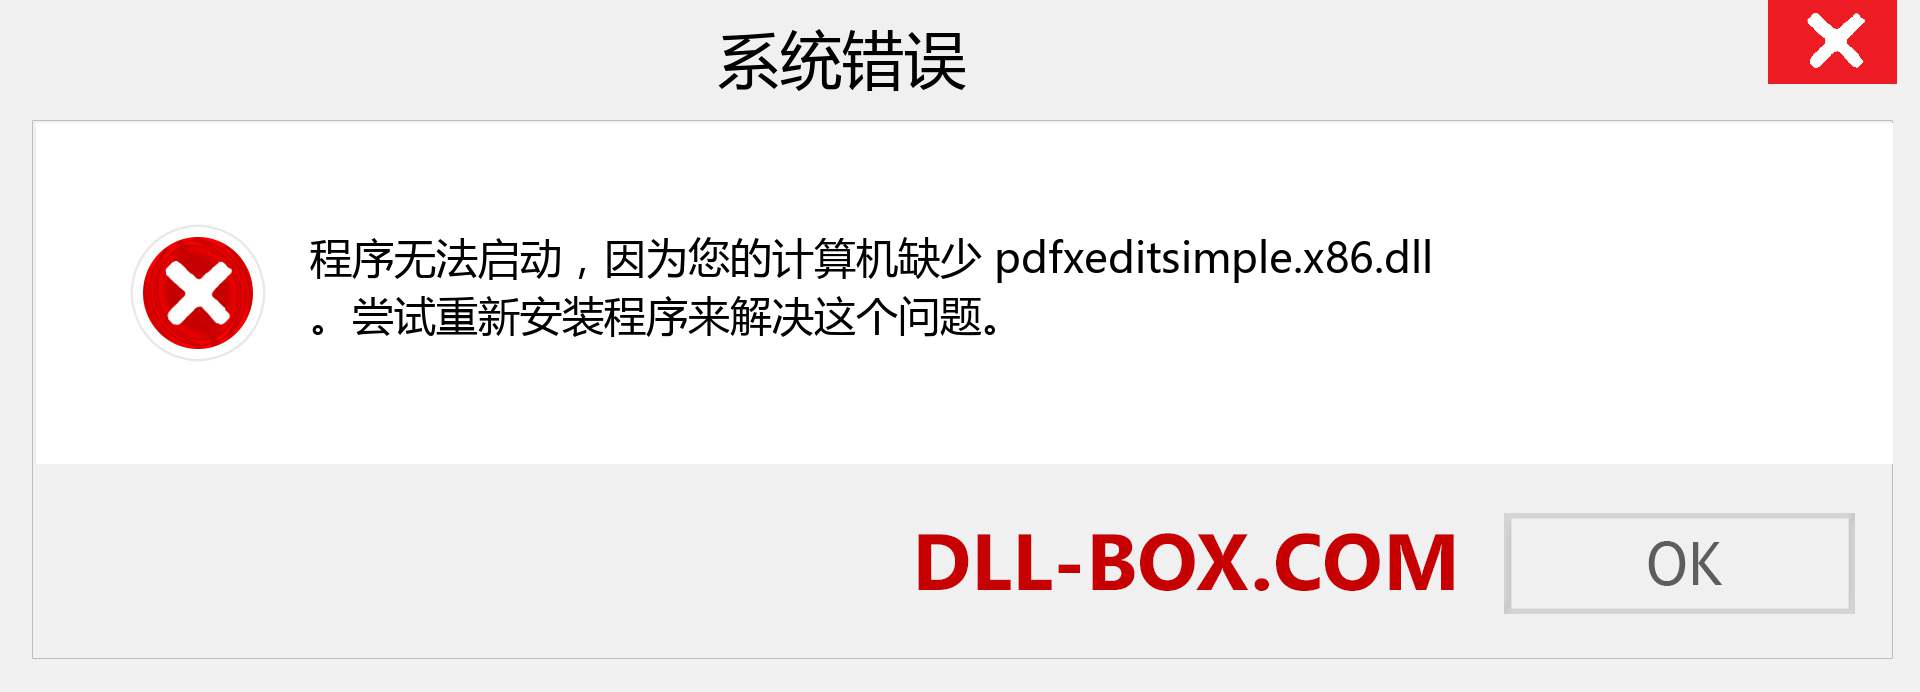 pdfxeditsimple.x86.dll 文件丢失？。 适用于 Windows 7、8、10 的下载 - 修复 Windows、照片、图像上的 pdfxeditsimple.x86 dll 丢失错误